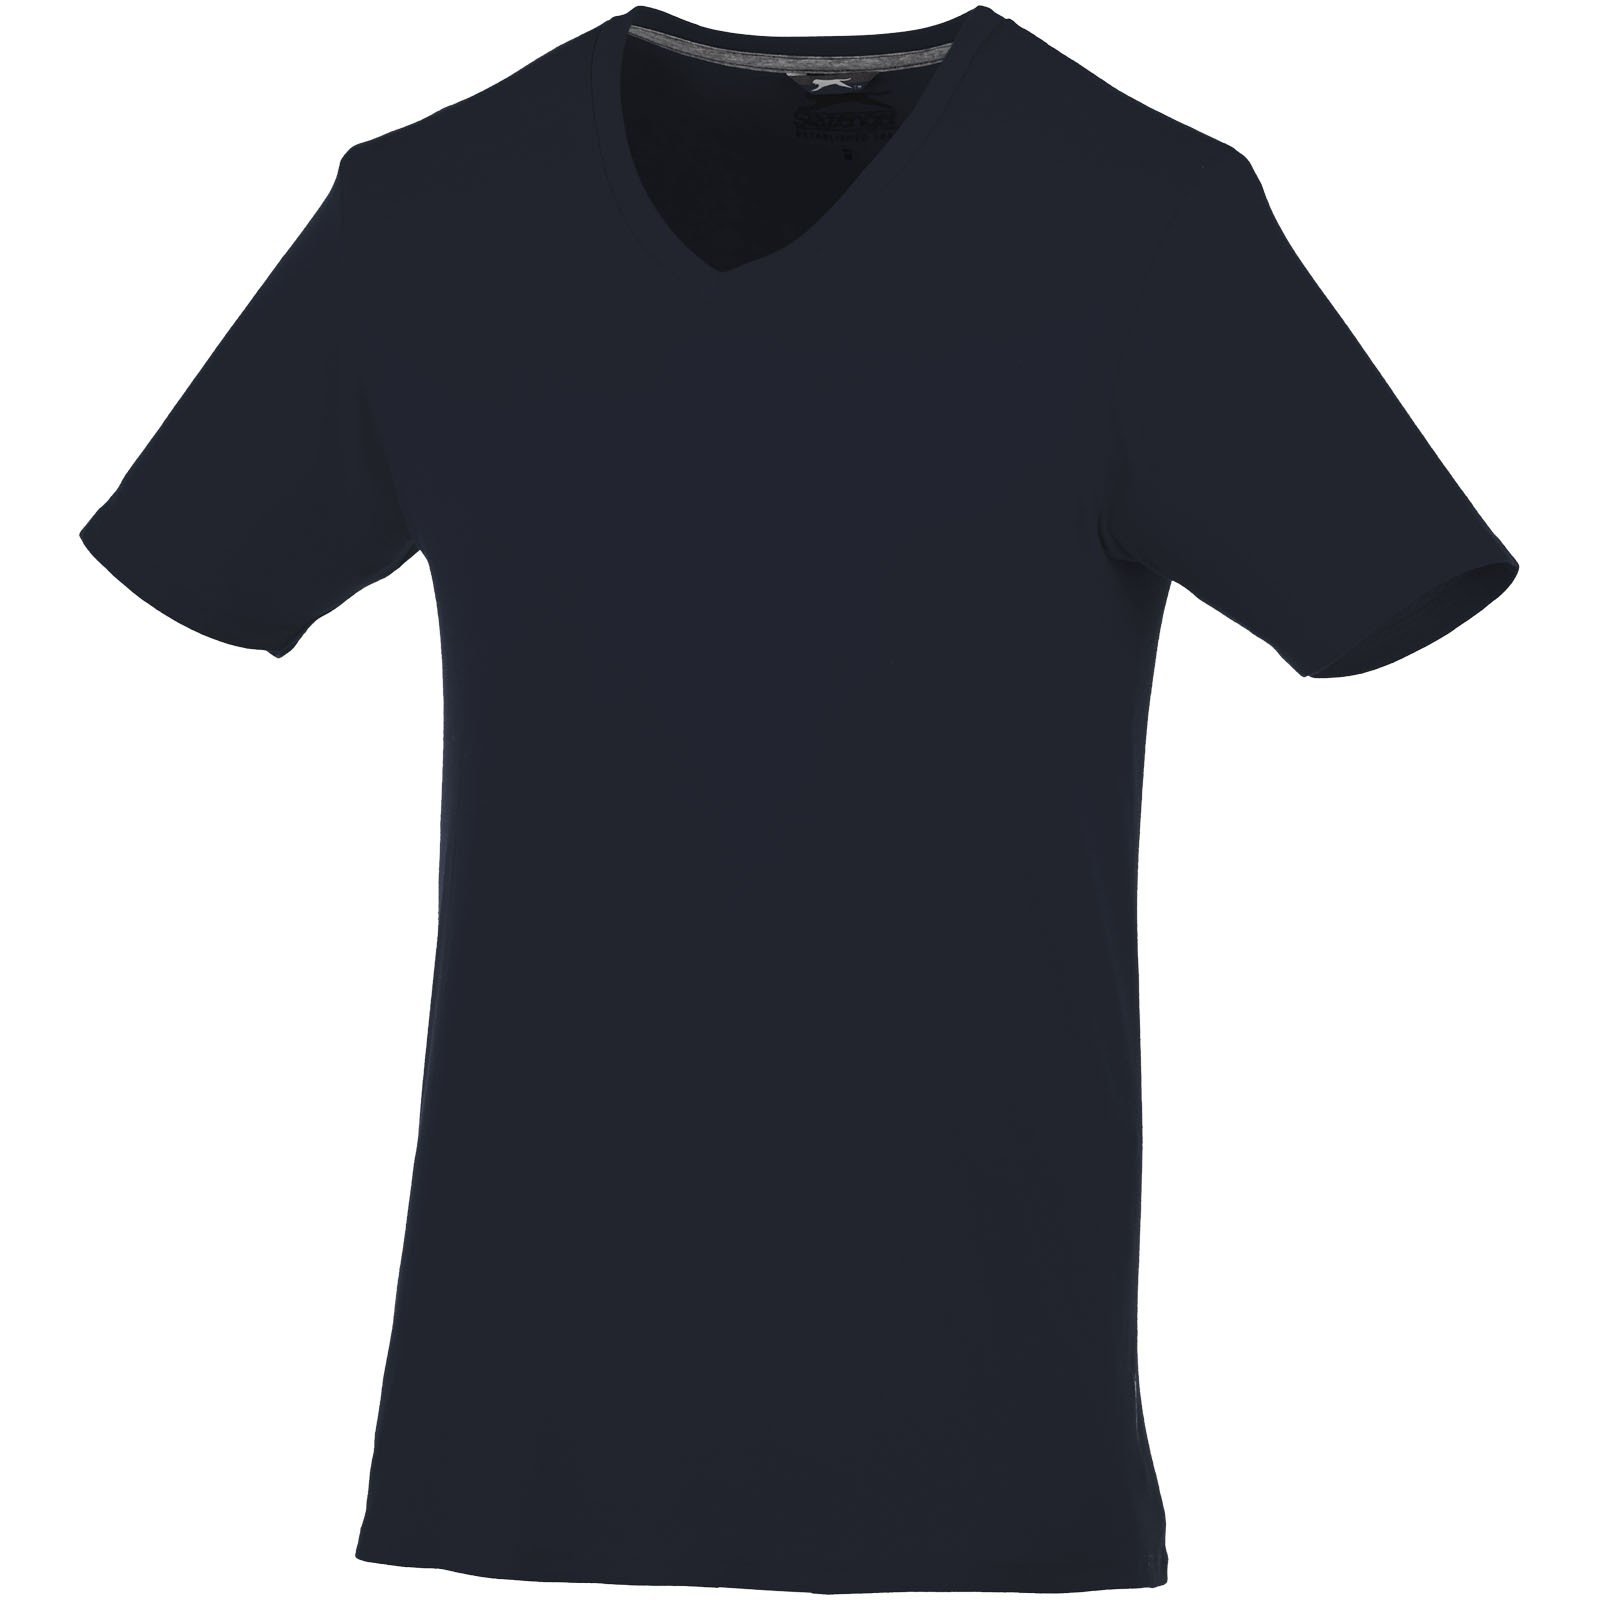 Bosey short sleeve men's v-neck t-shirt - Navy / S